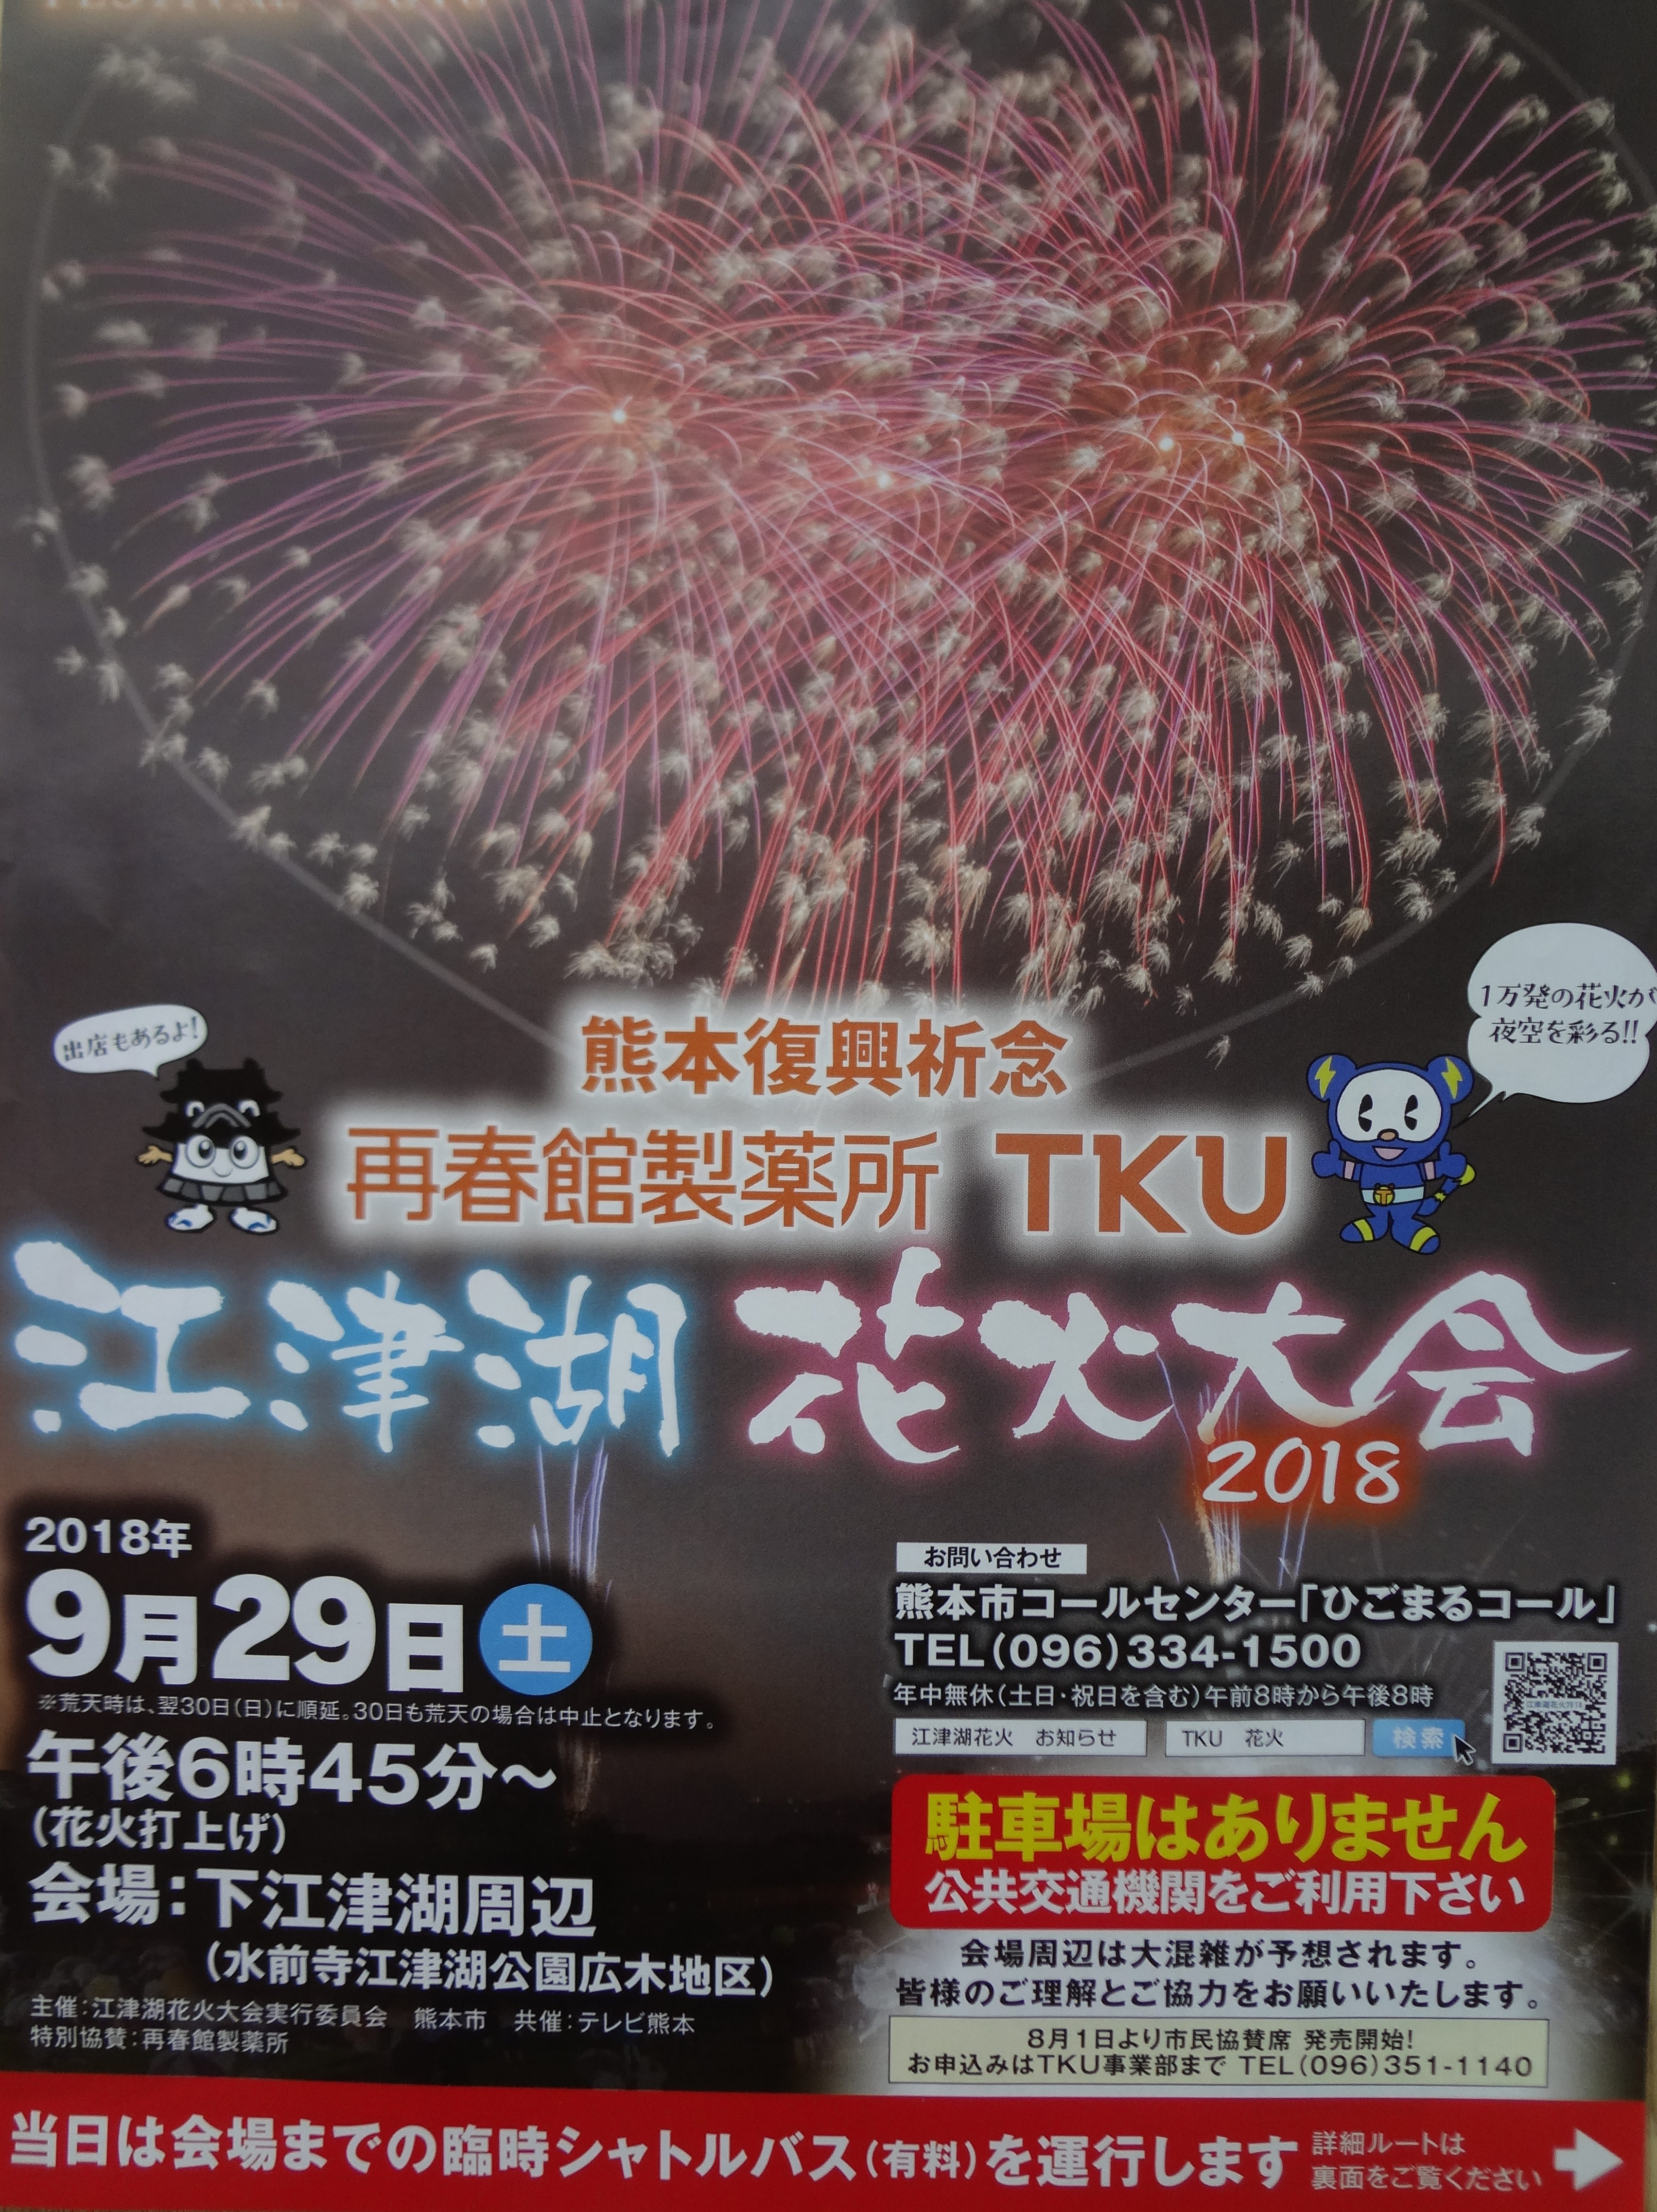 江津湖花火大会２０１８ シャトルバス運行あり 観覧の穴場スポットはここだ 熊本市東区 開催中止 くまたん